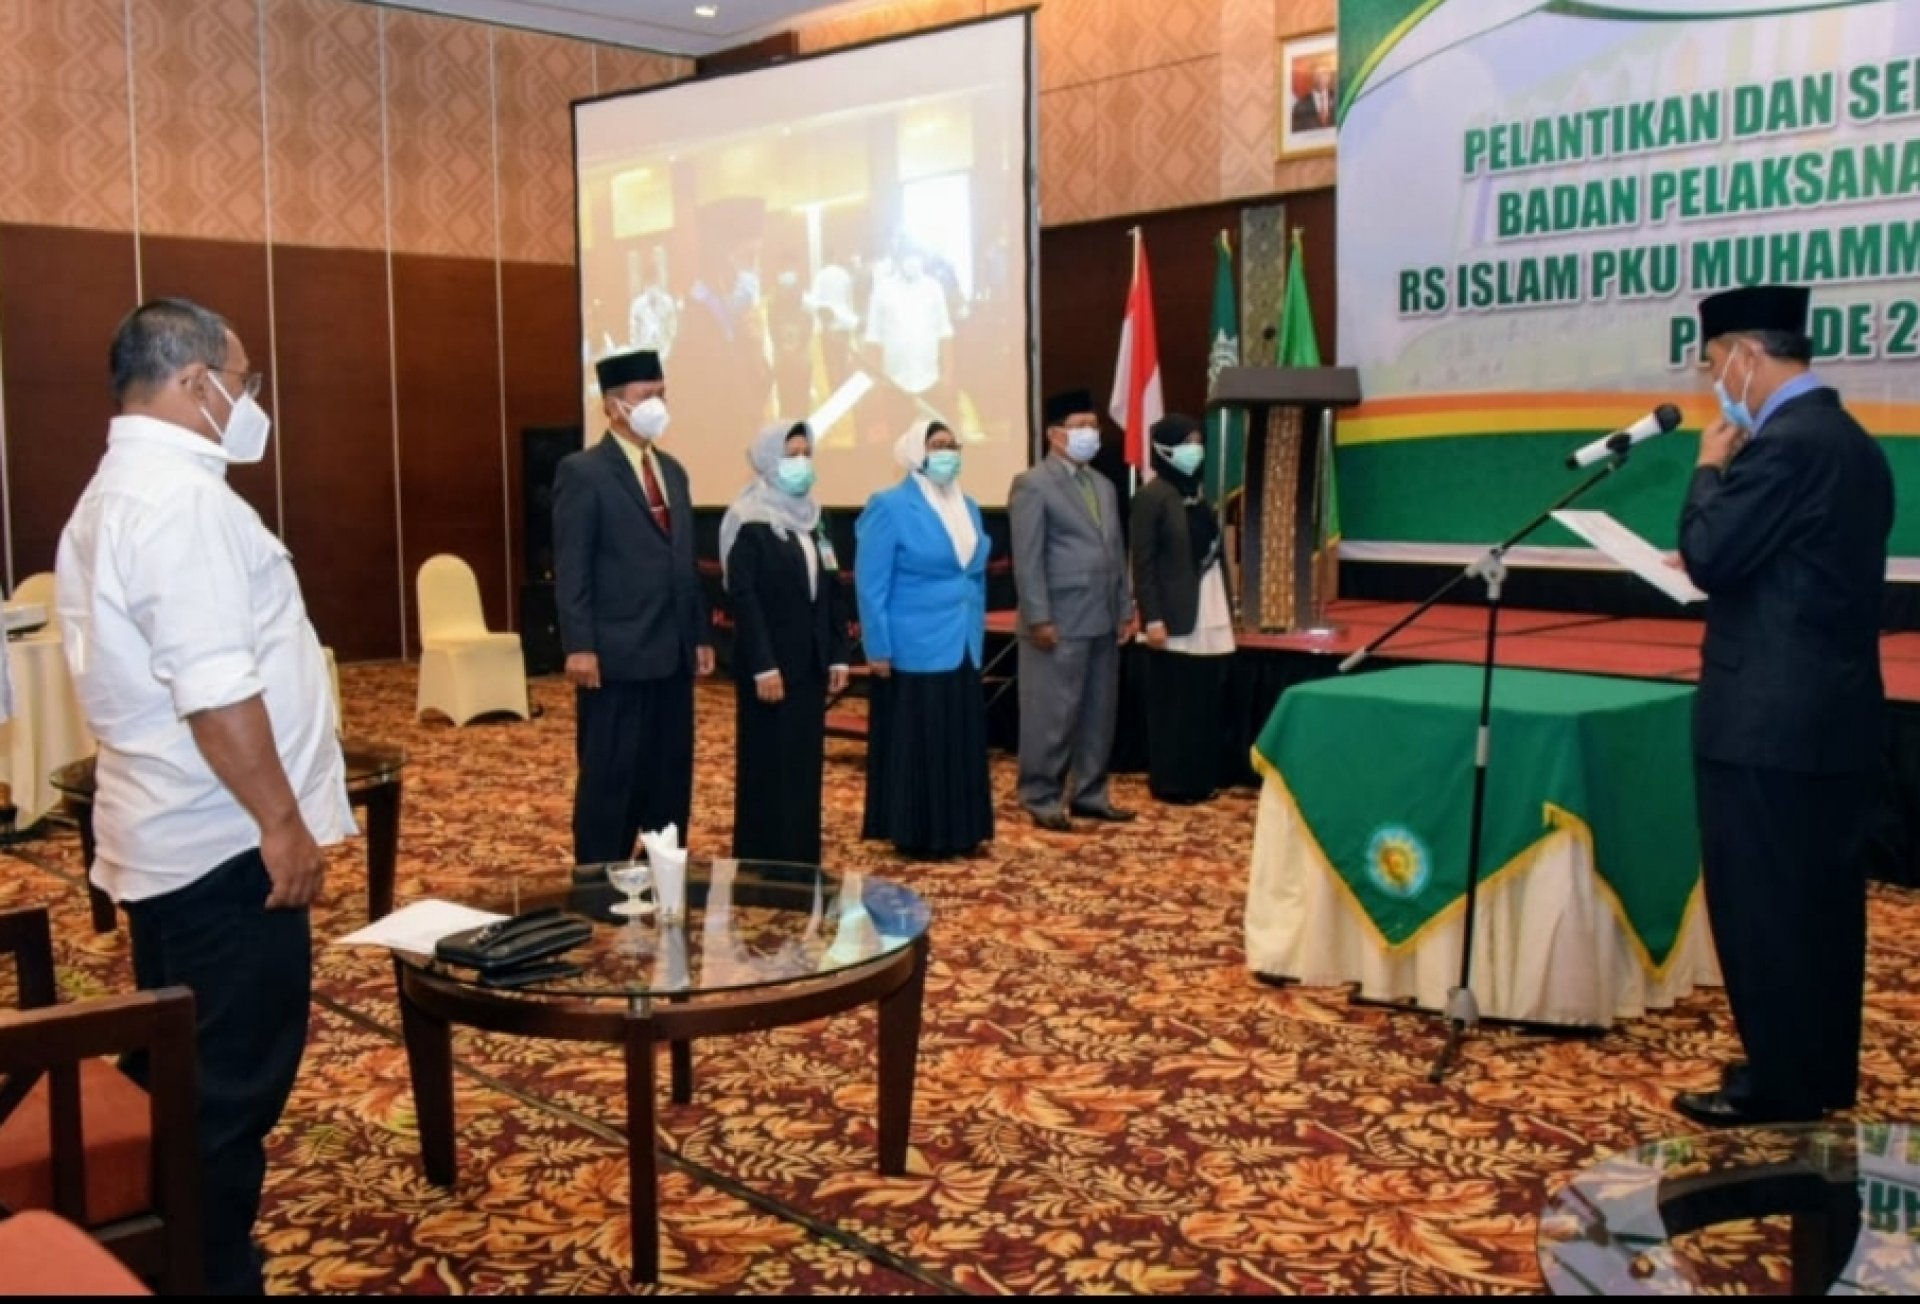 Wakil Gubernur Kalteng Hadiri Pelantikan Badan Pelaksana Harian dan Direksi RS PKU Muhammadiyah Palangka Raya